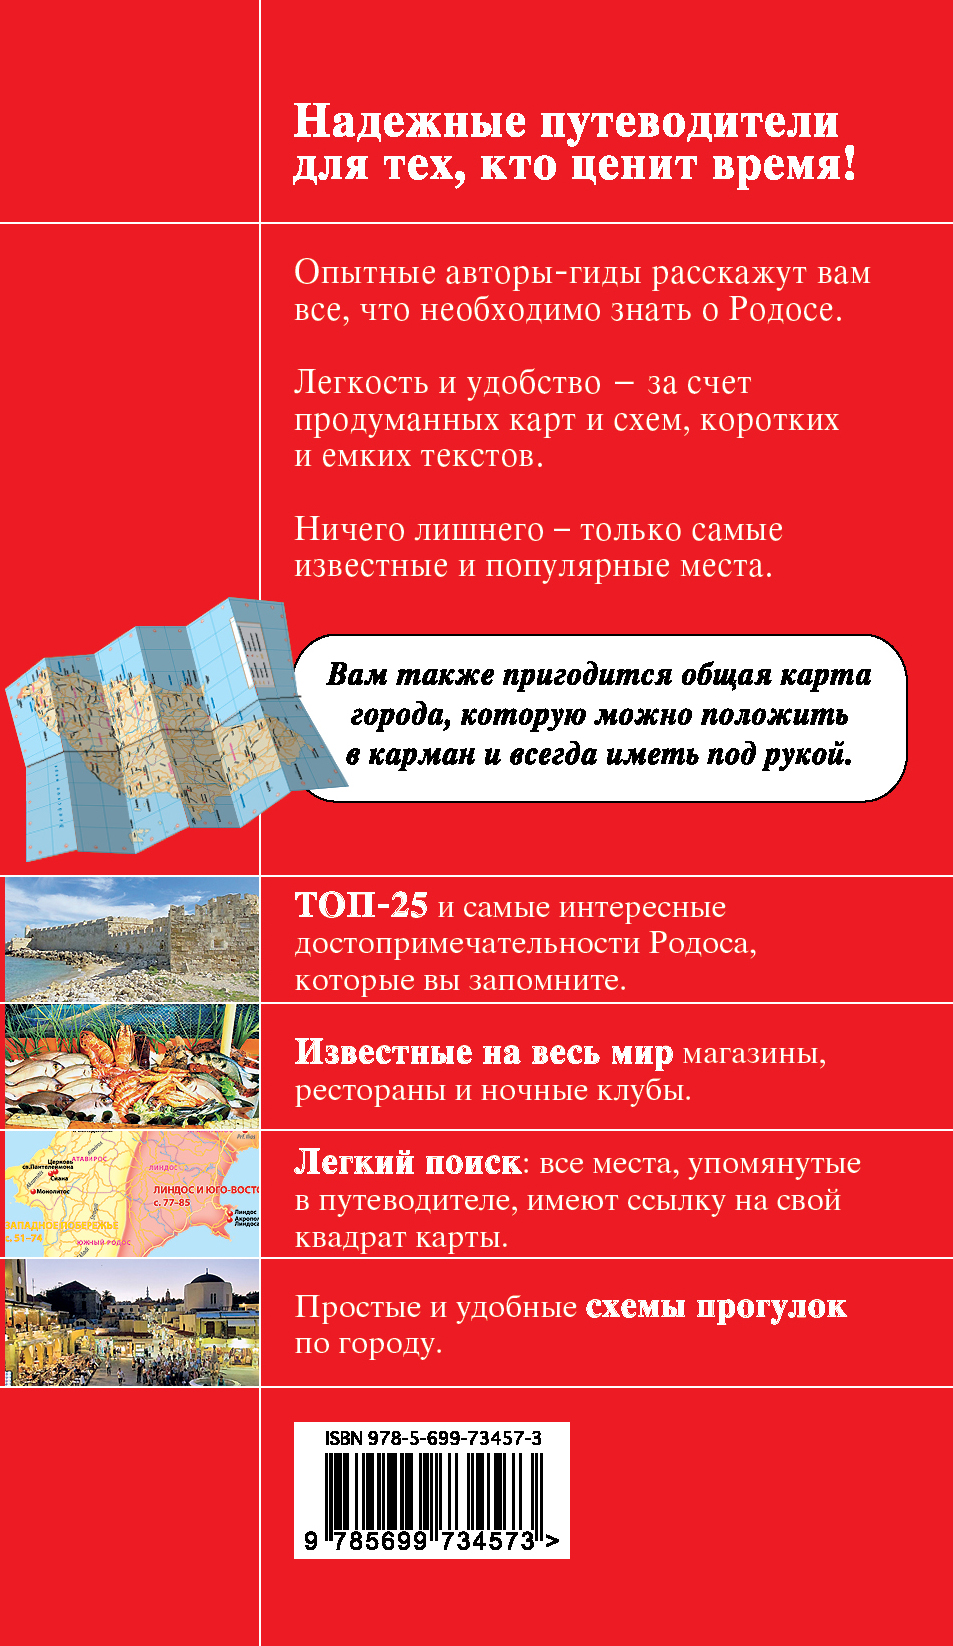 Экскурсии на родосе (греция) на русском языке: топ-5 в 2020 году